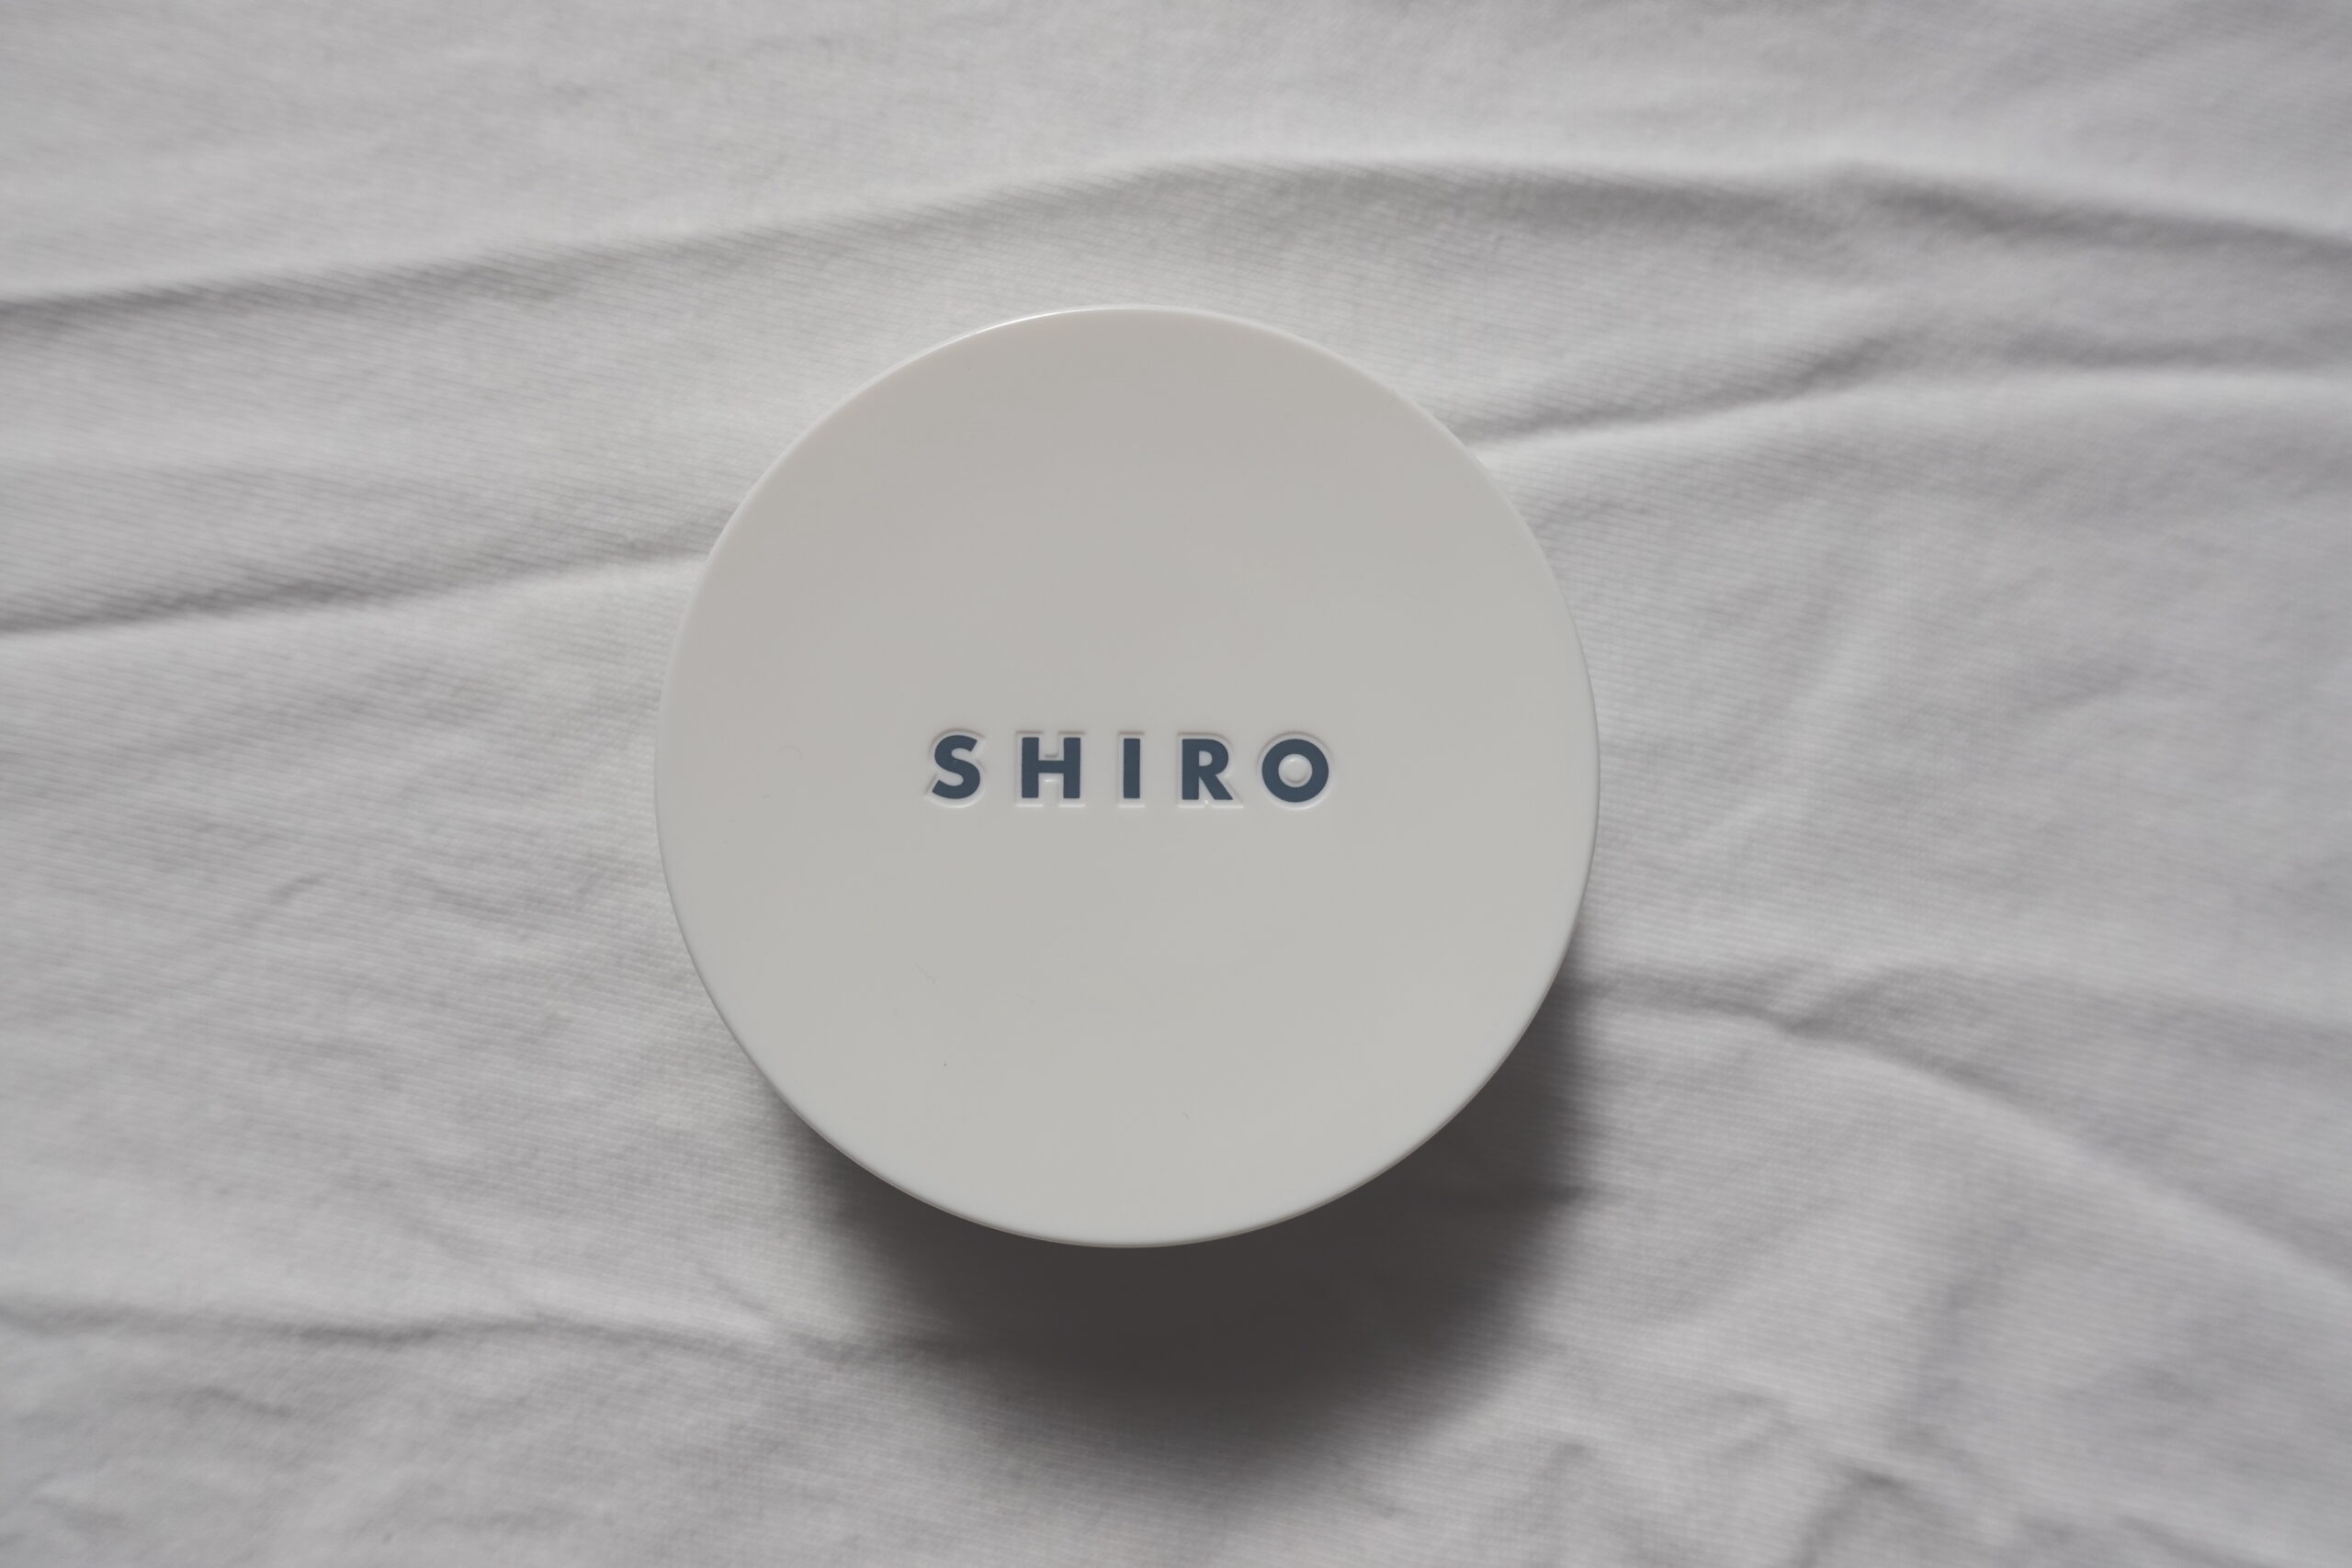 レビュー Shiroの練り香水は 男が使うのに ちょうど良い 逸品 メンズ目線 One Style Depot